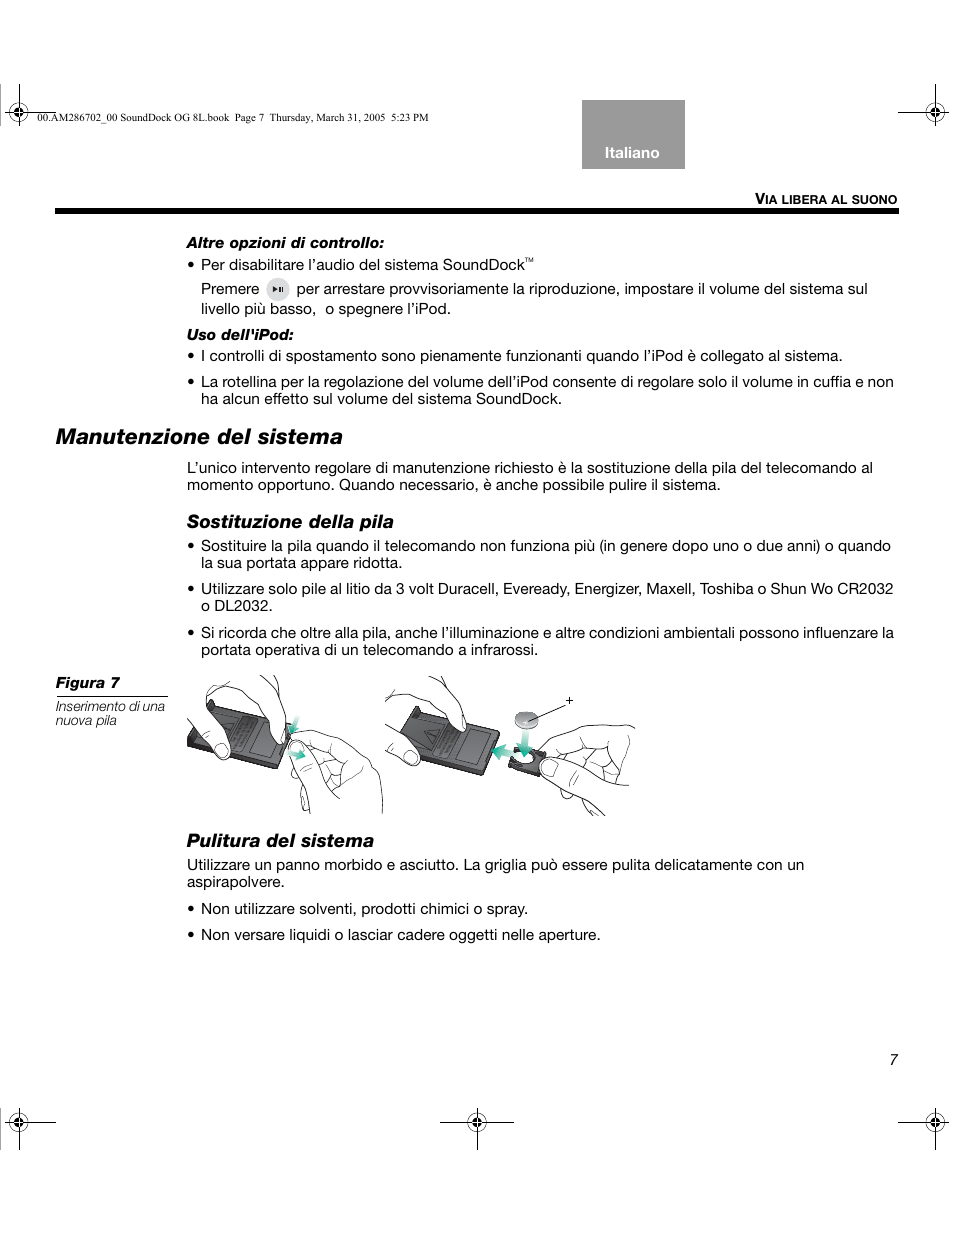 Manutenzione del sistema, Sostituzione della pila, Pulitura del sistema | Bose SoundDock User Manual | Page 51 / 72